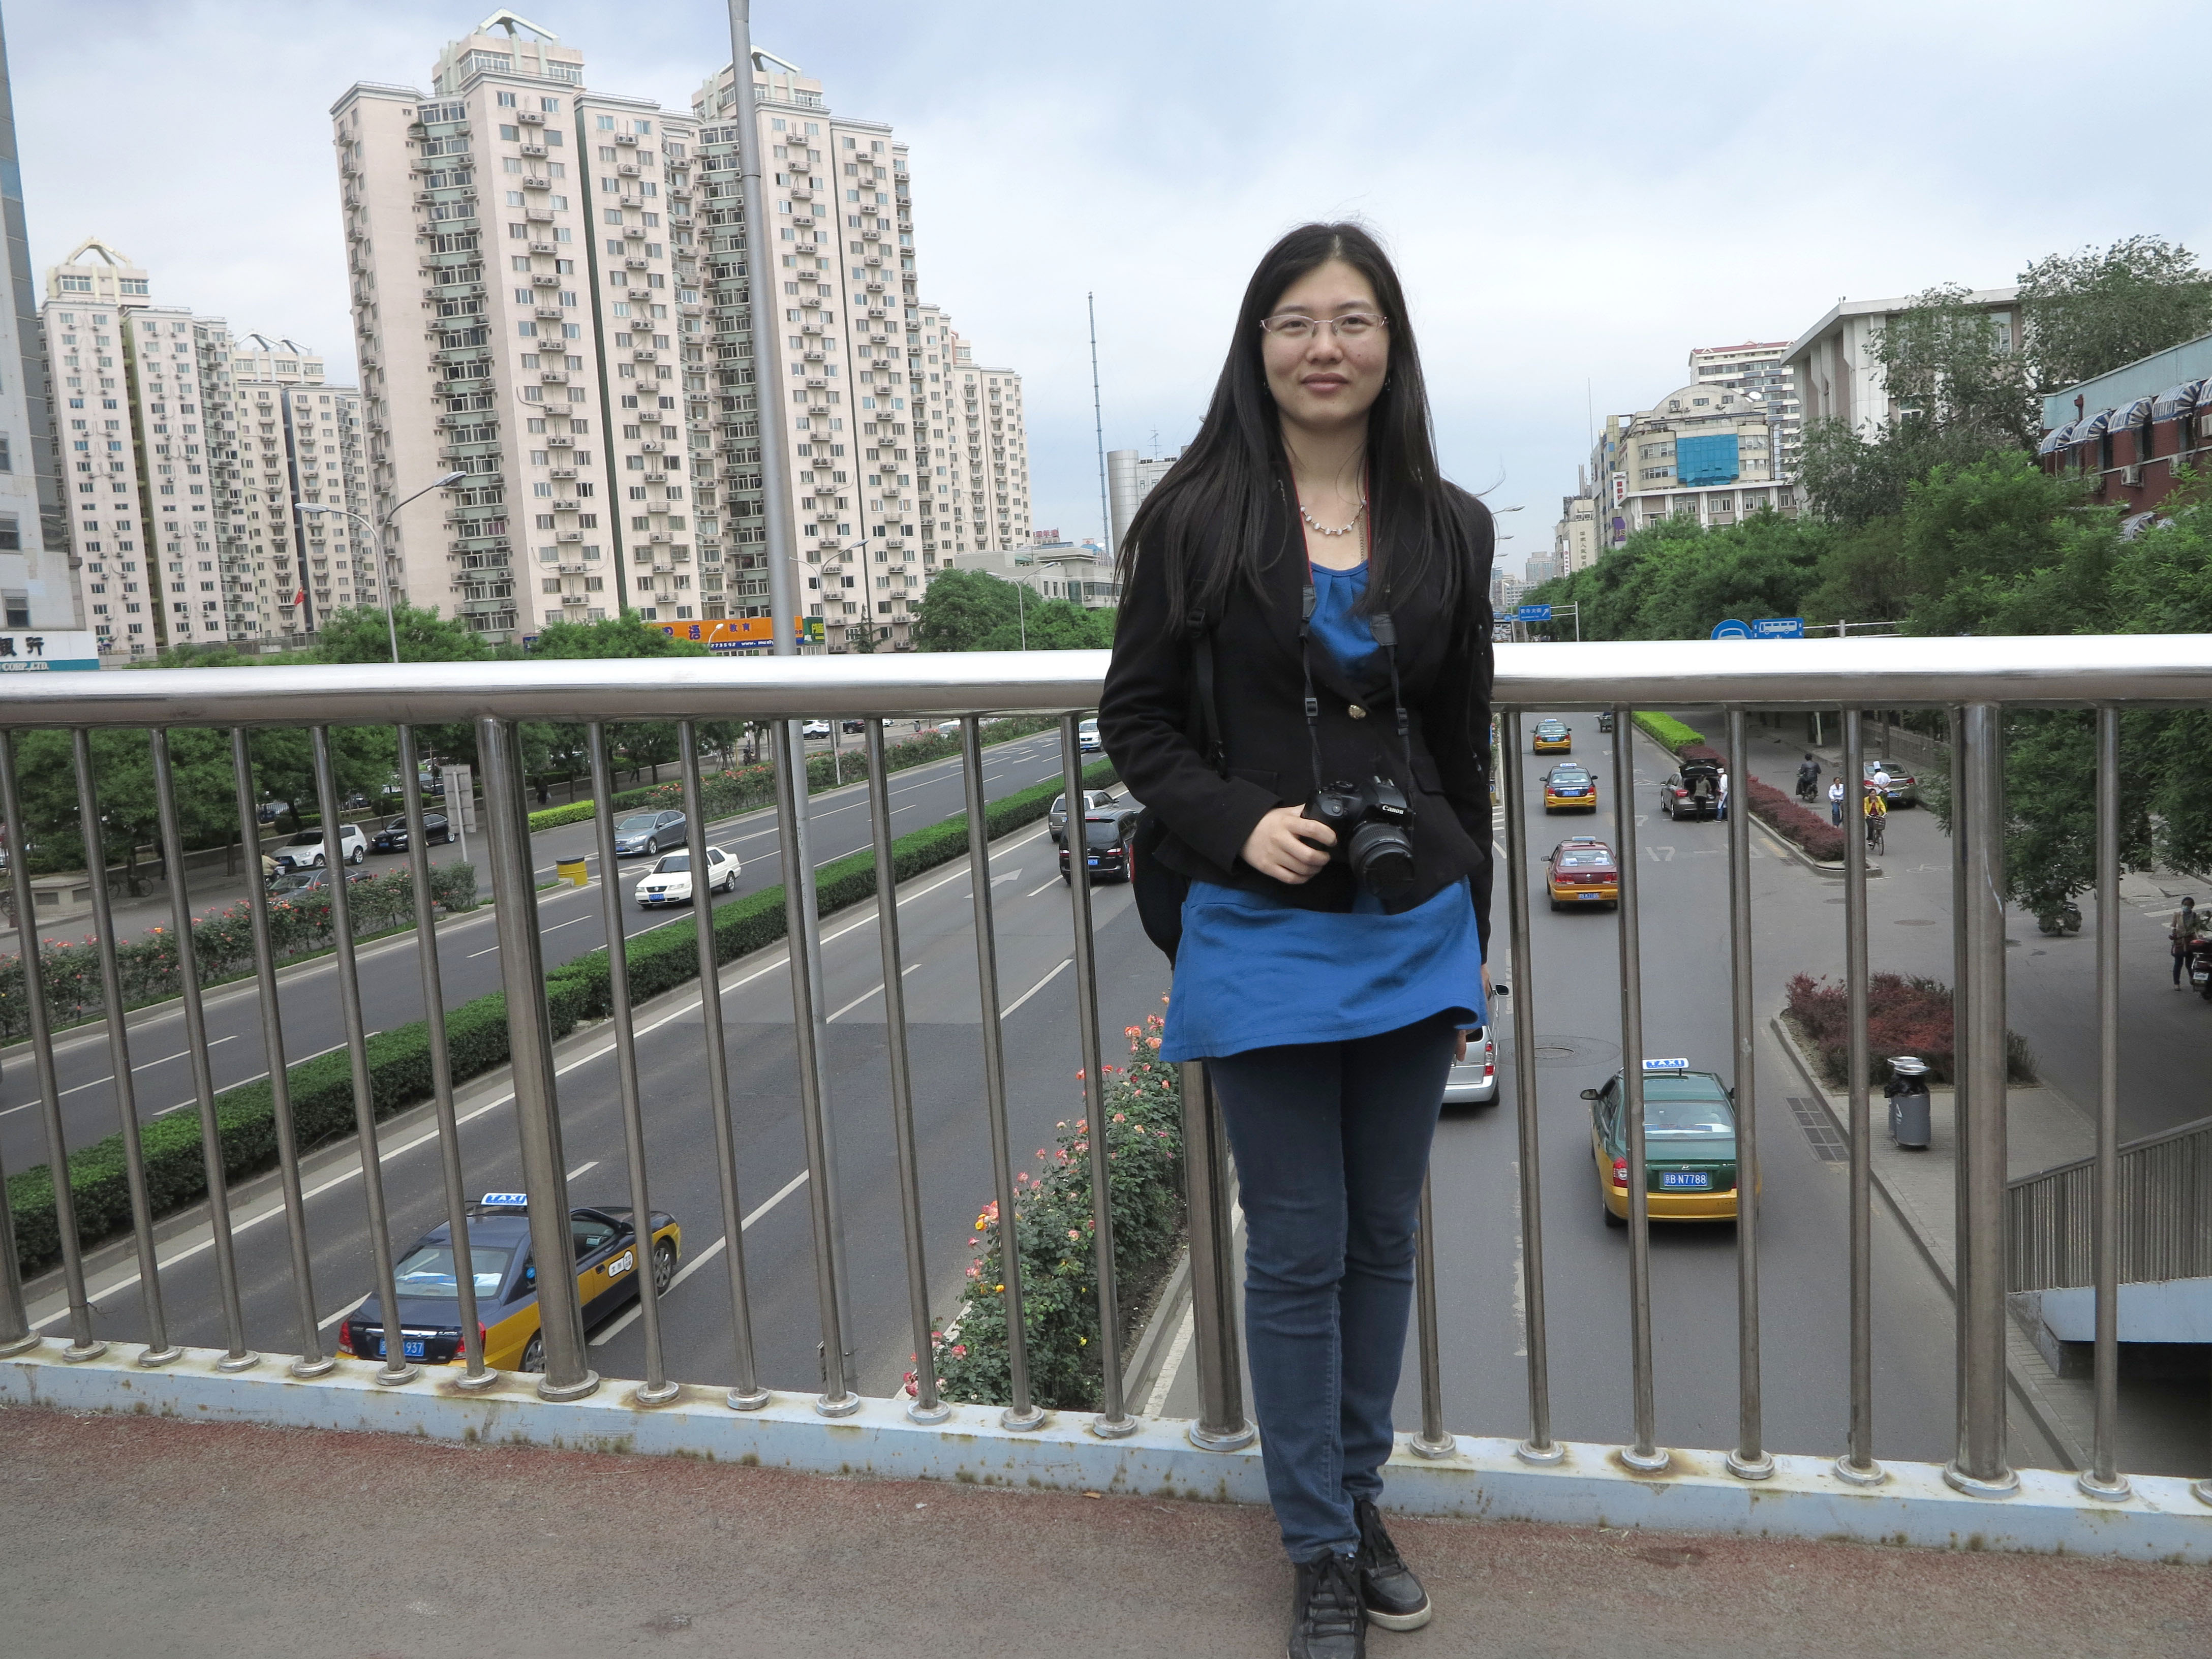 Her world: Xia Linan (Summer) overlooking Desheng Street. (Jock Lauterer photo)